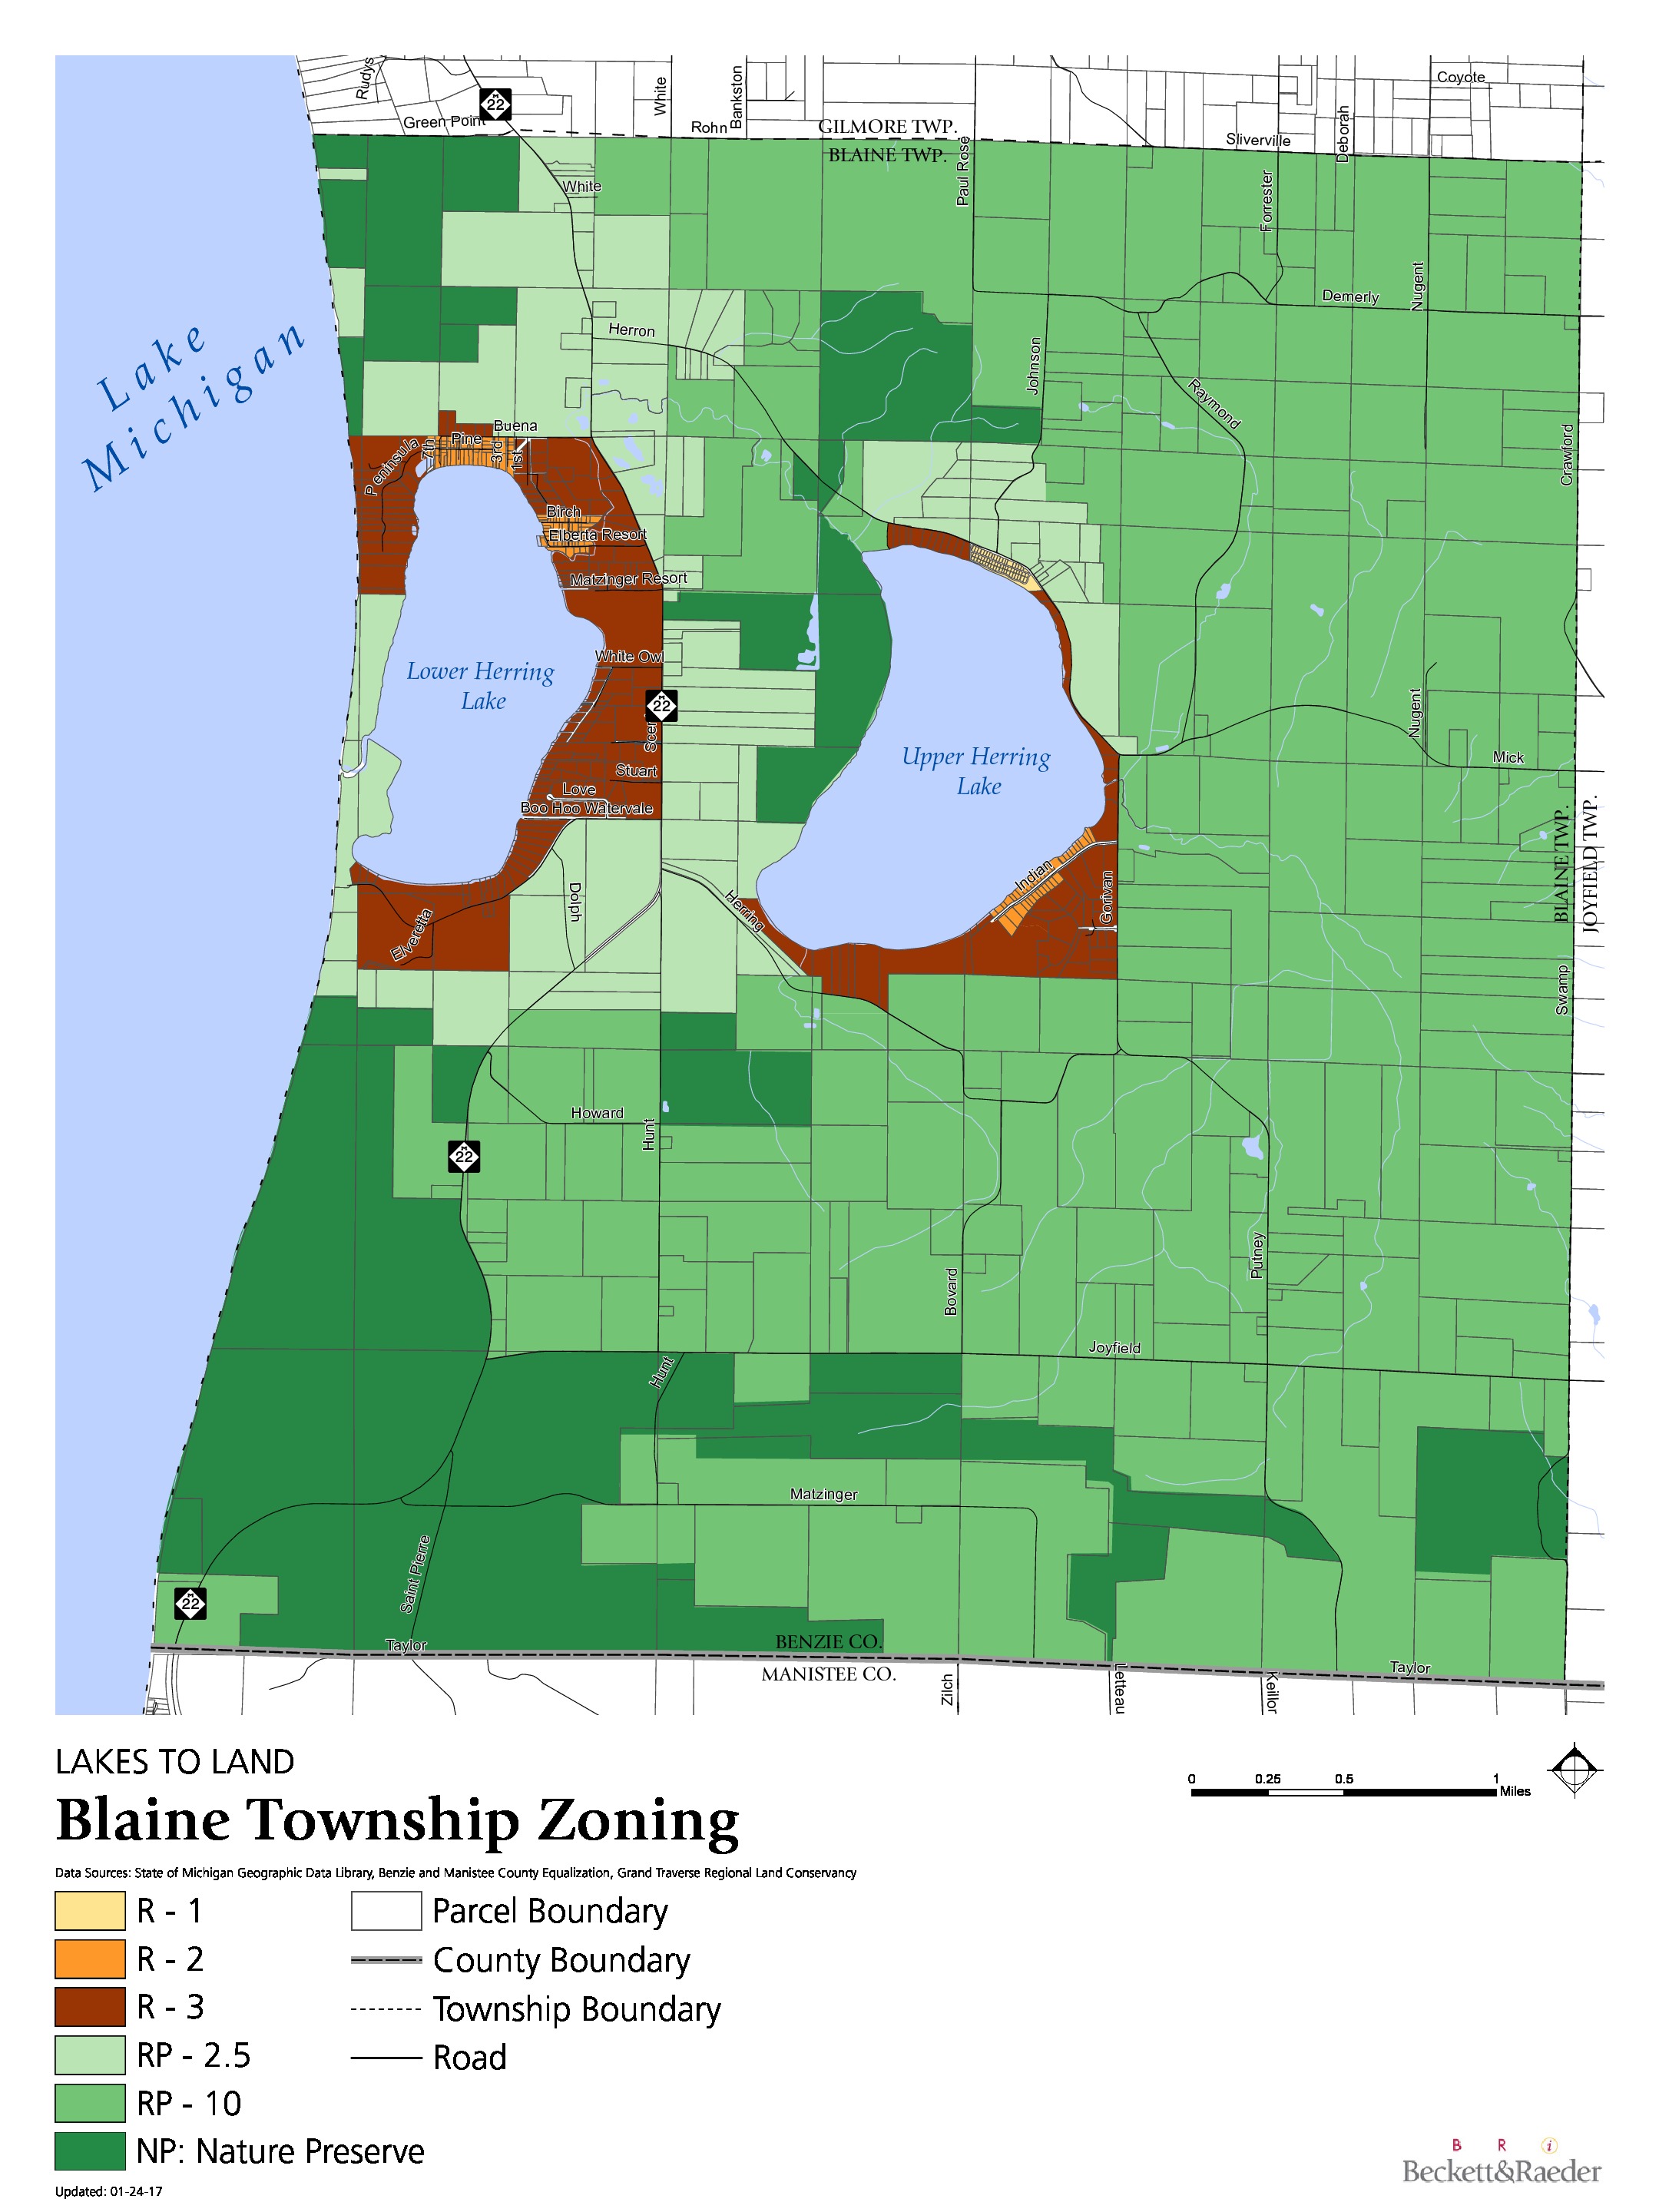 Zoning - Blaine Township